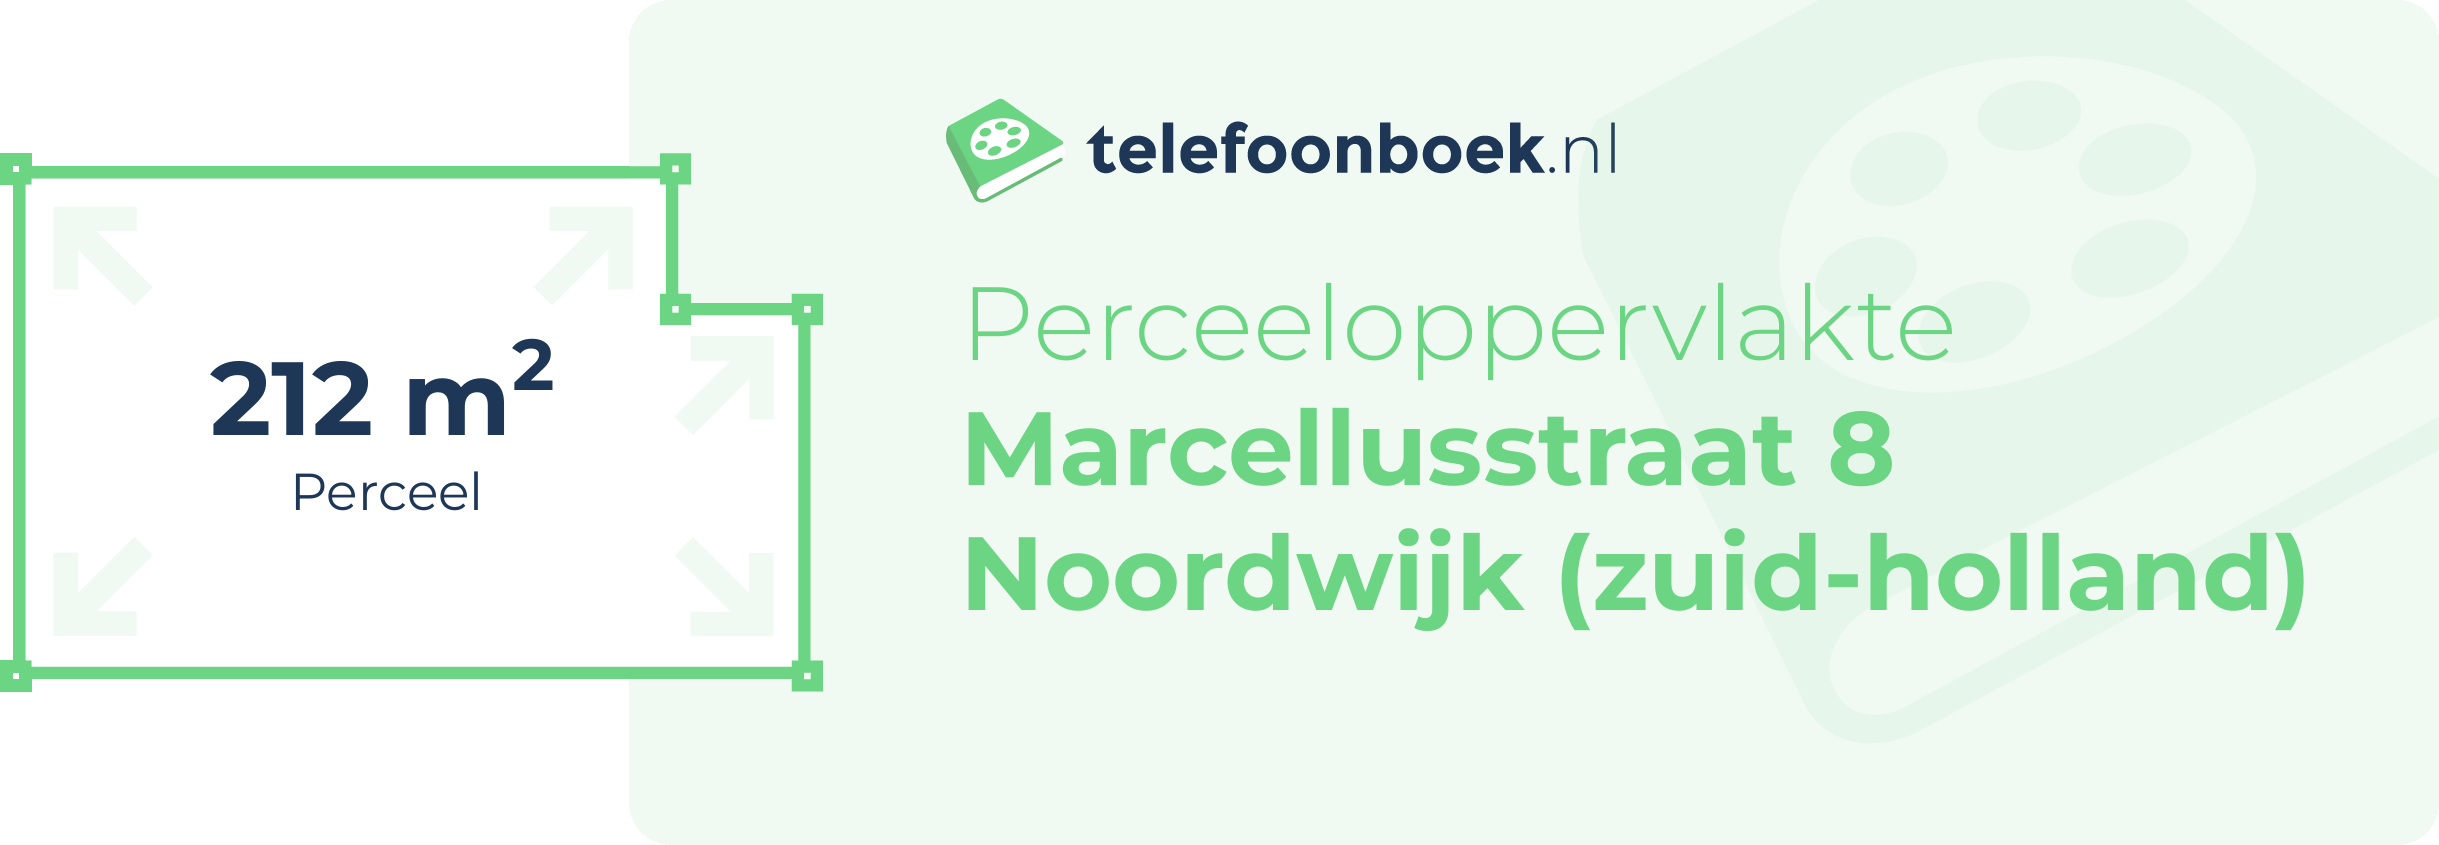 Perceeloppervlakte Marcellusstraat 8 Noordwijk (Zuid-Holland)